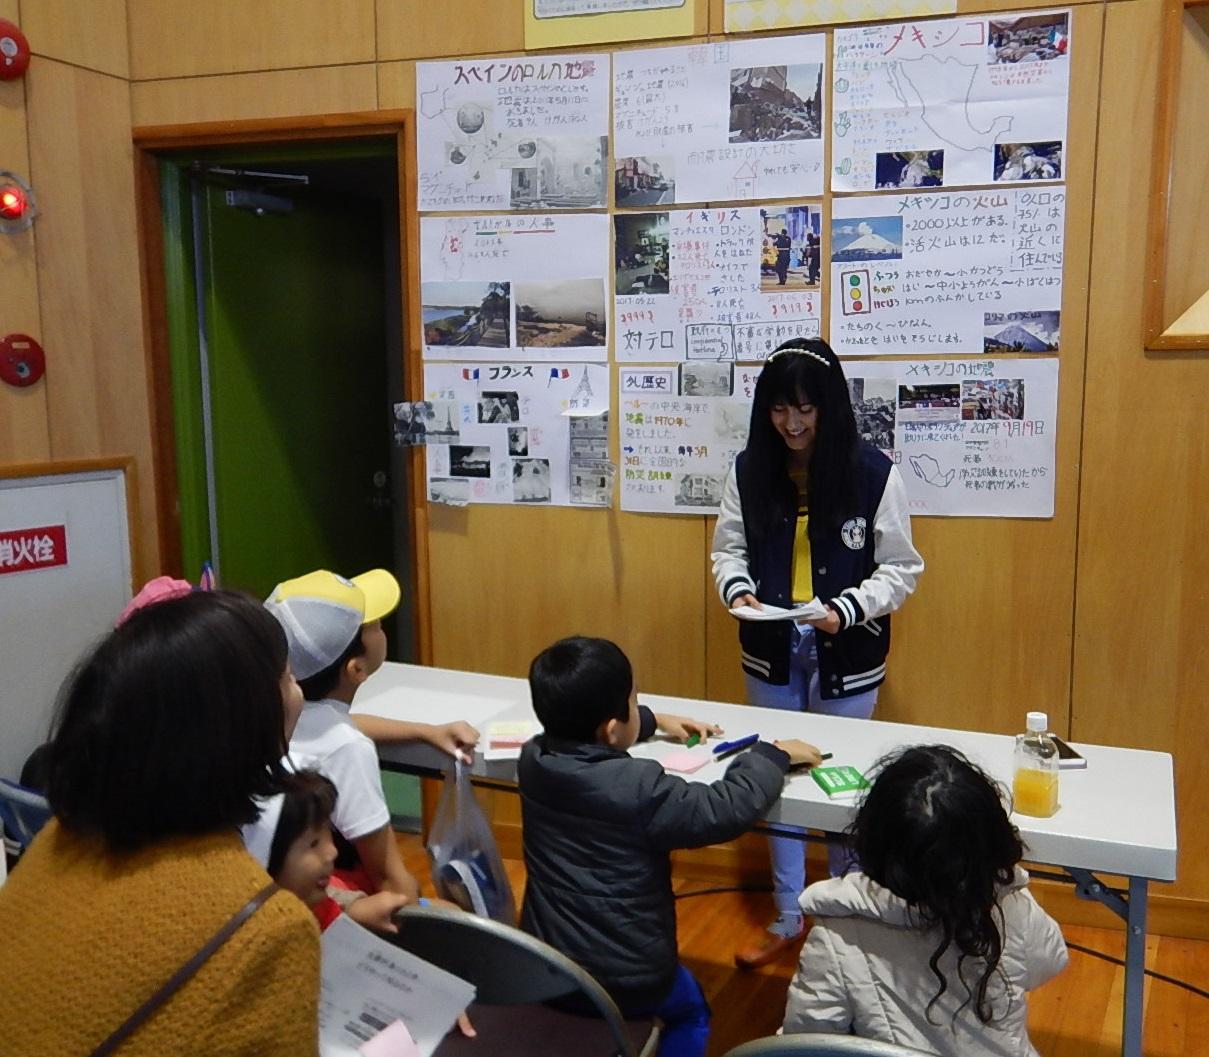 壁に各国の防災情報の紙が貼られ、参加している子供たちや保護者が壁の前に立っている女性の話を聞いている写真